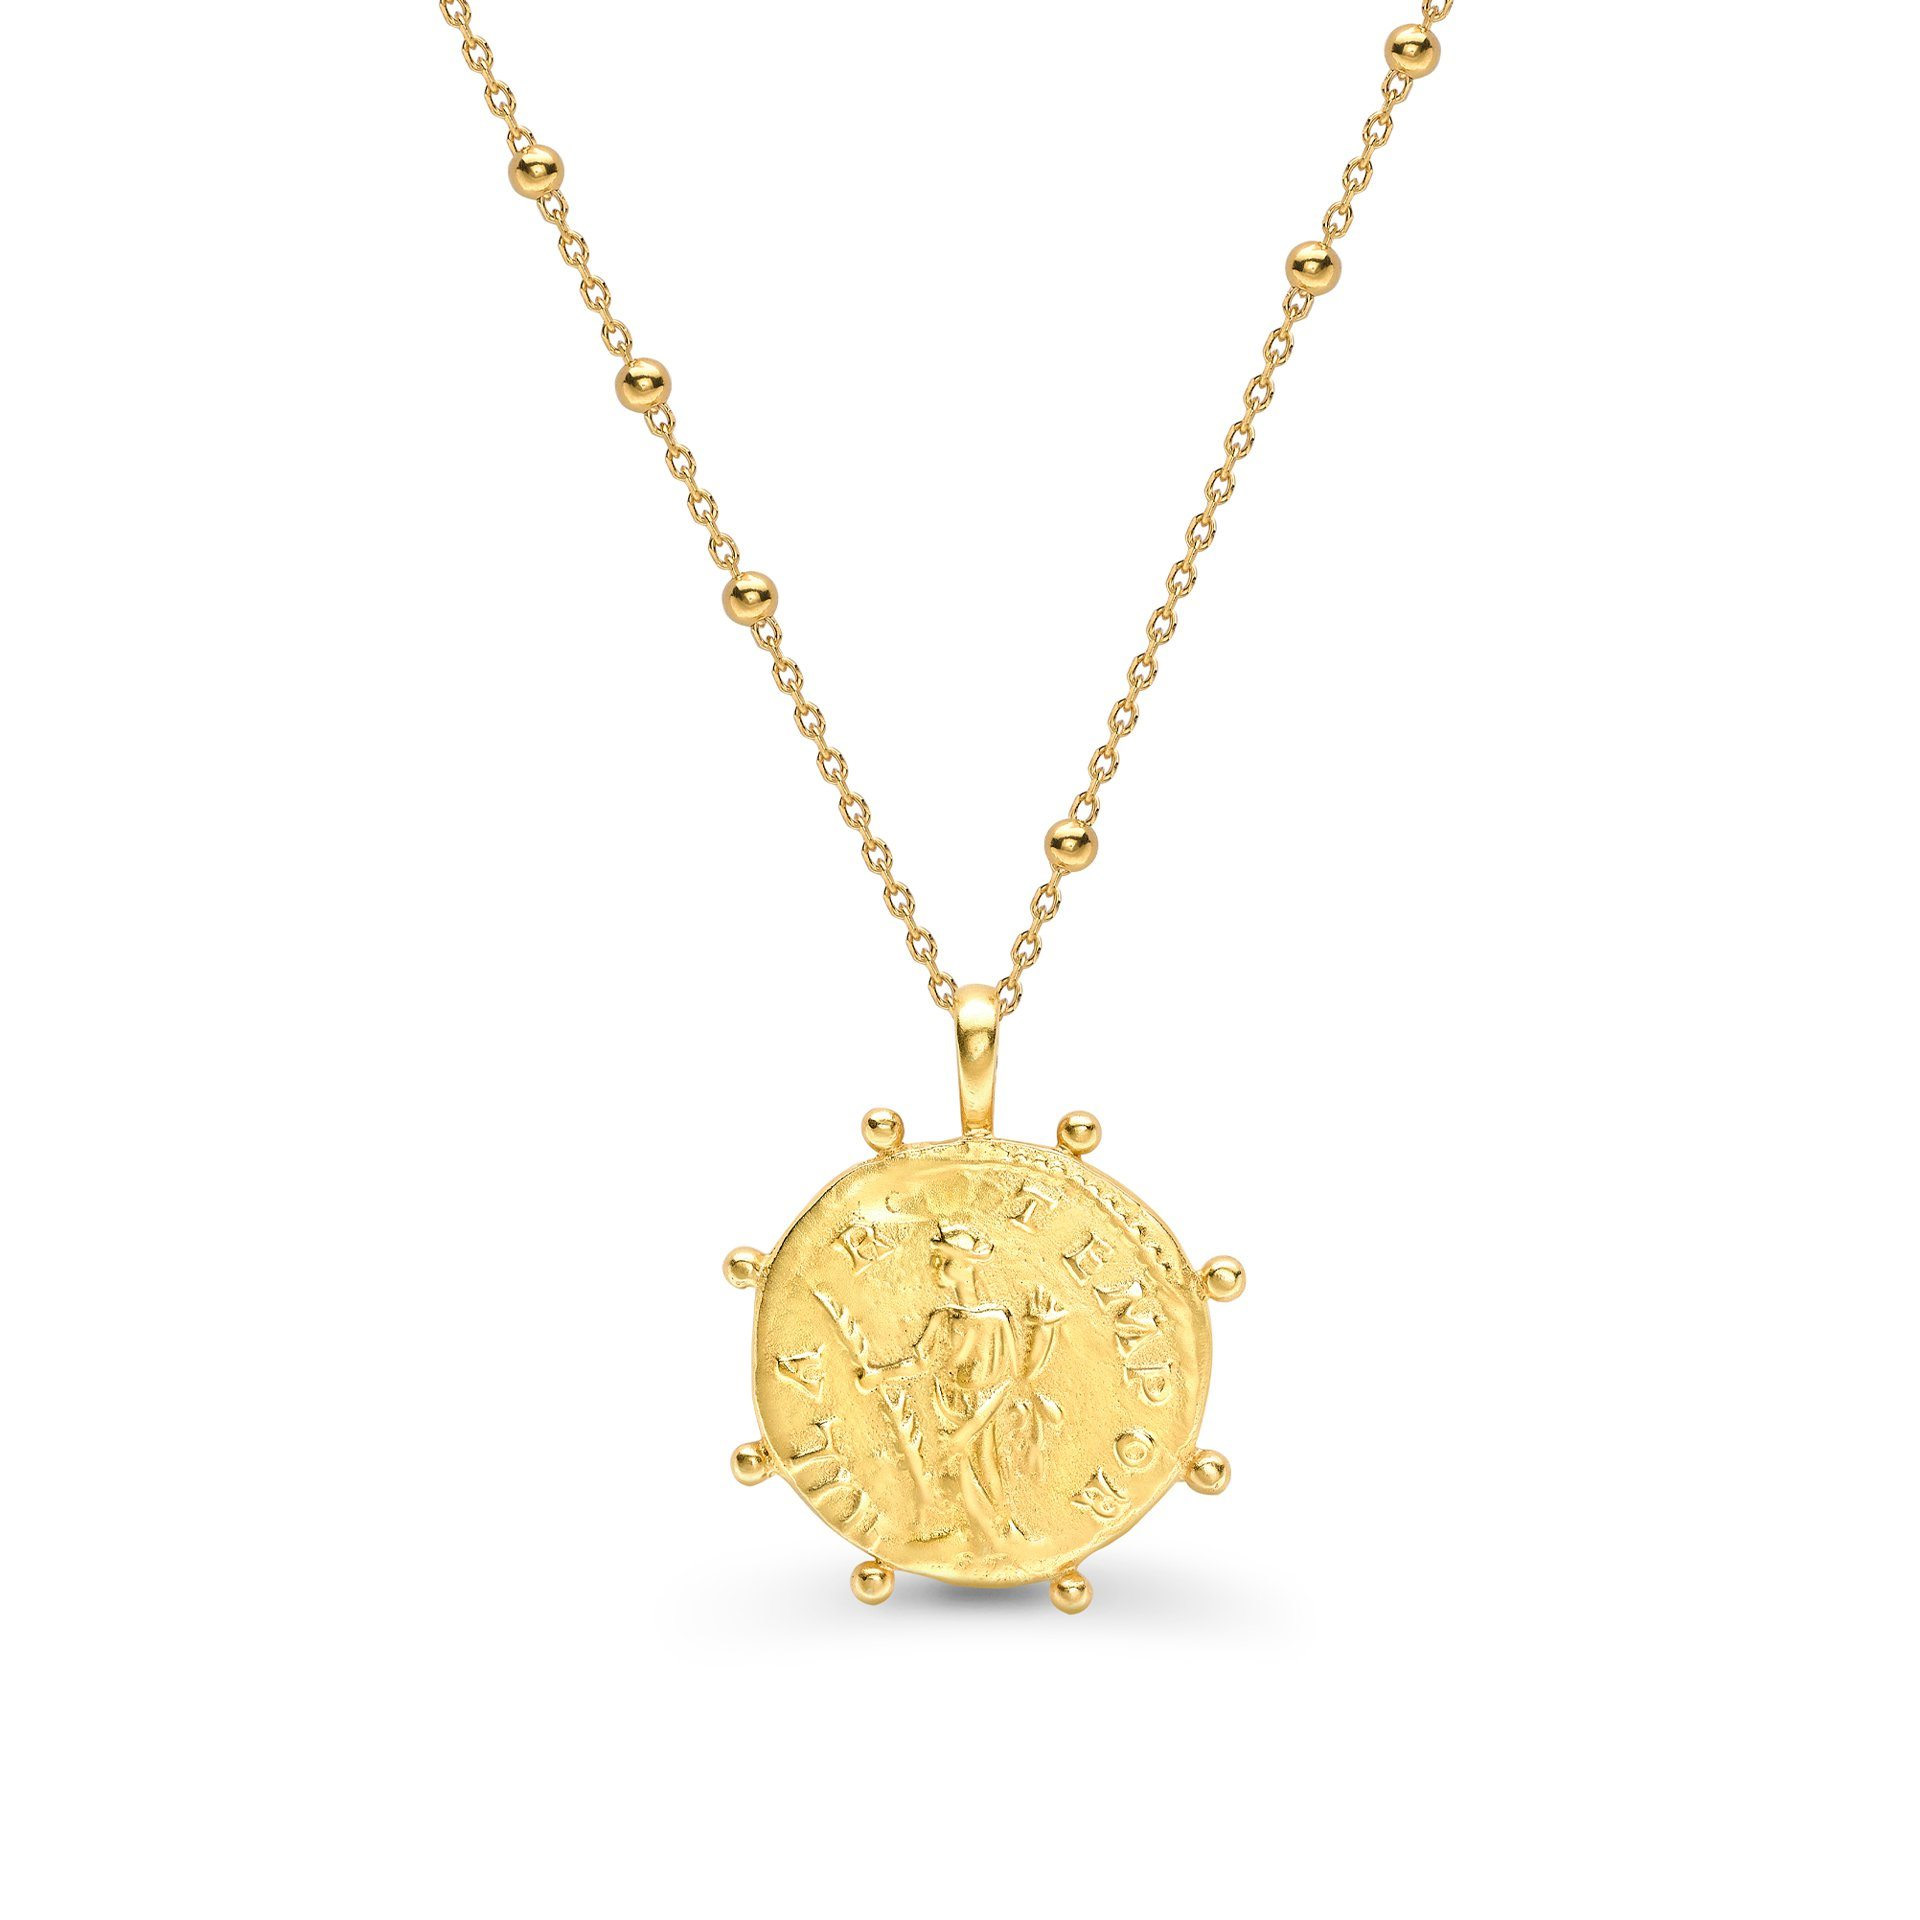 Großhandel OEM/ODM Schmuck 18 Karat Gold-Vermeil-Halskette mit römischer Münze an einer Perlenkette aus Silberschmuck